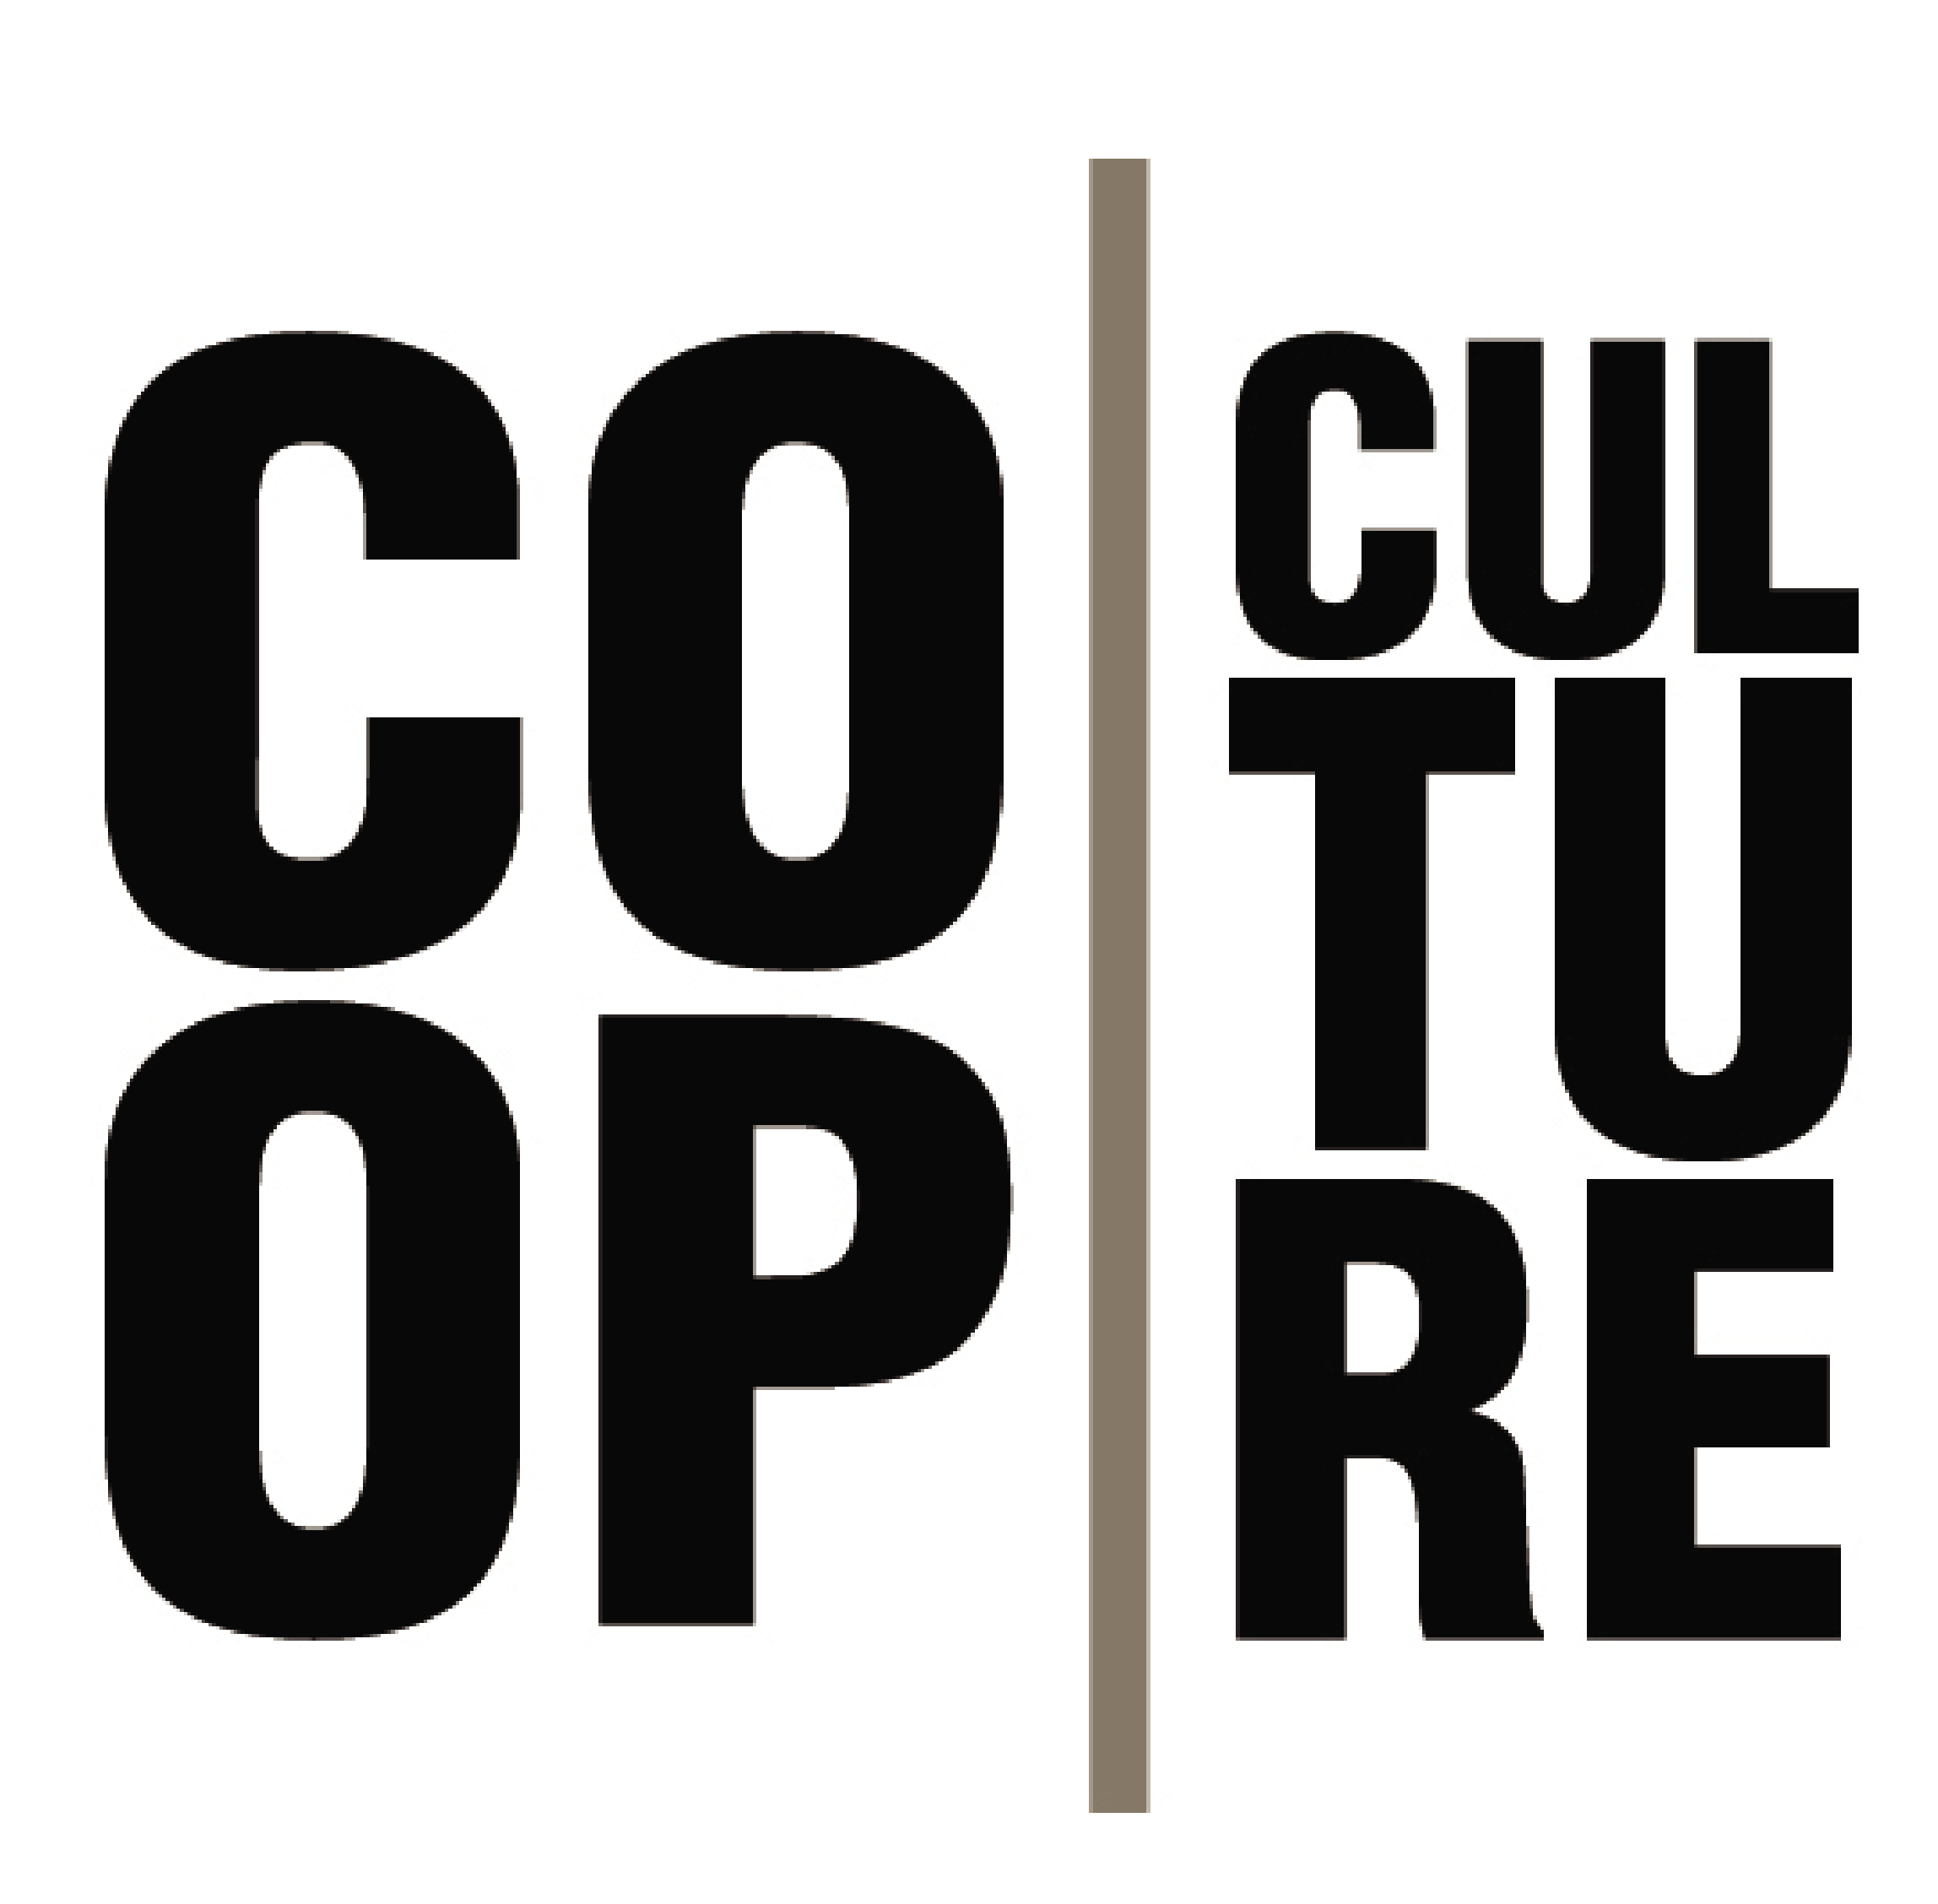 COOP. Culture logo.png